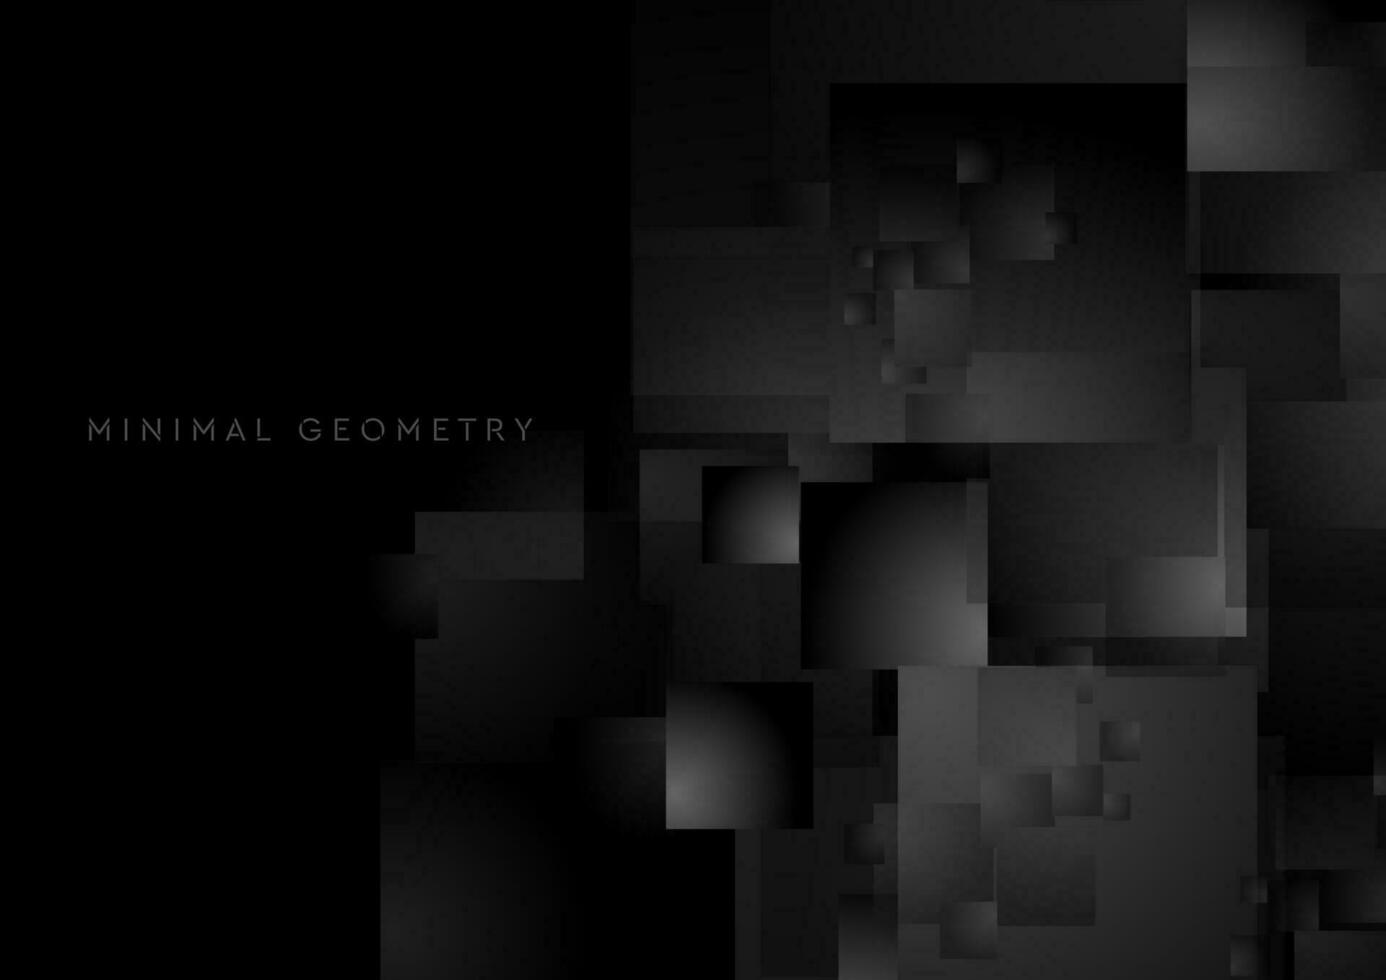 schwarz Quadrate abstrakt Technik geometrisch minimal Hintergrund vektor